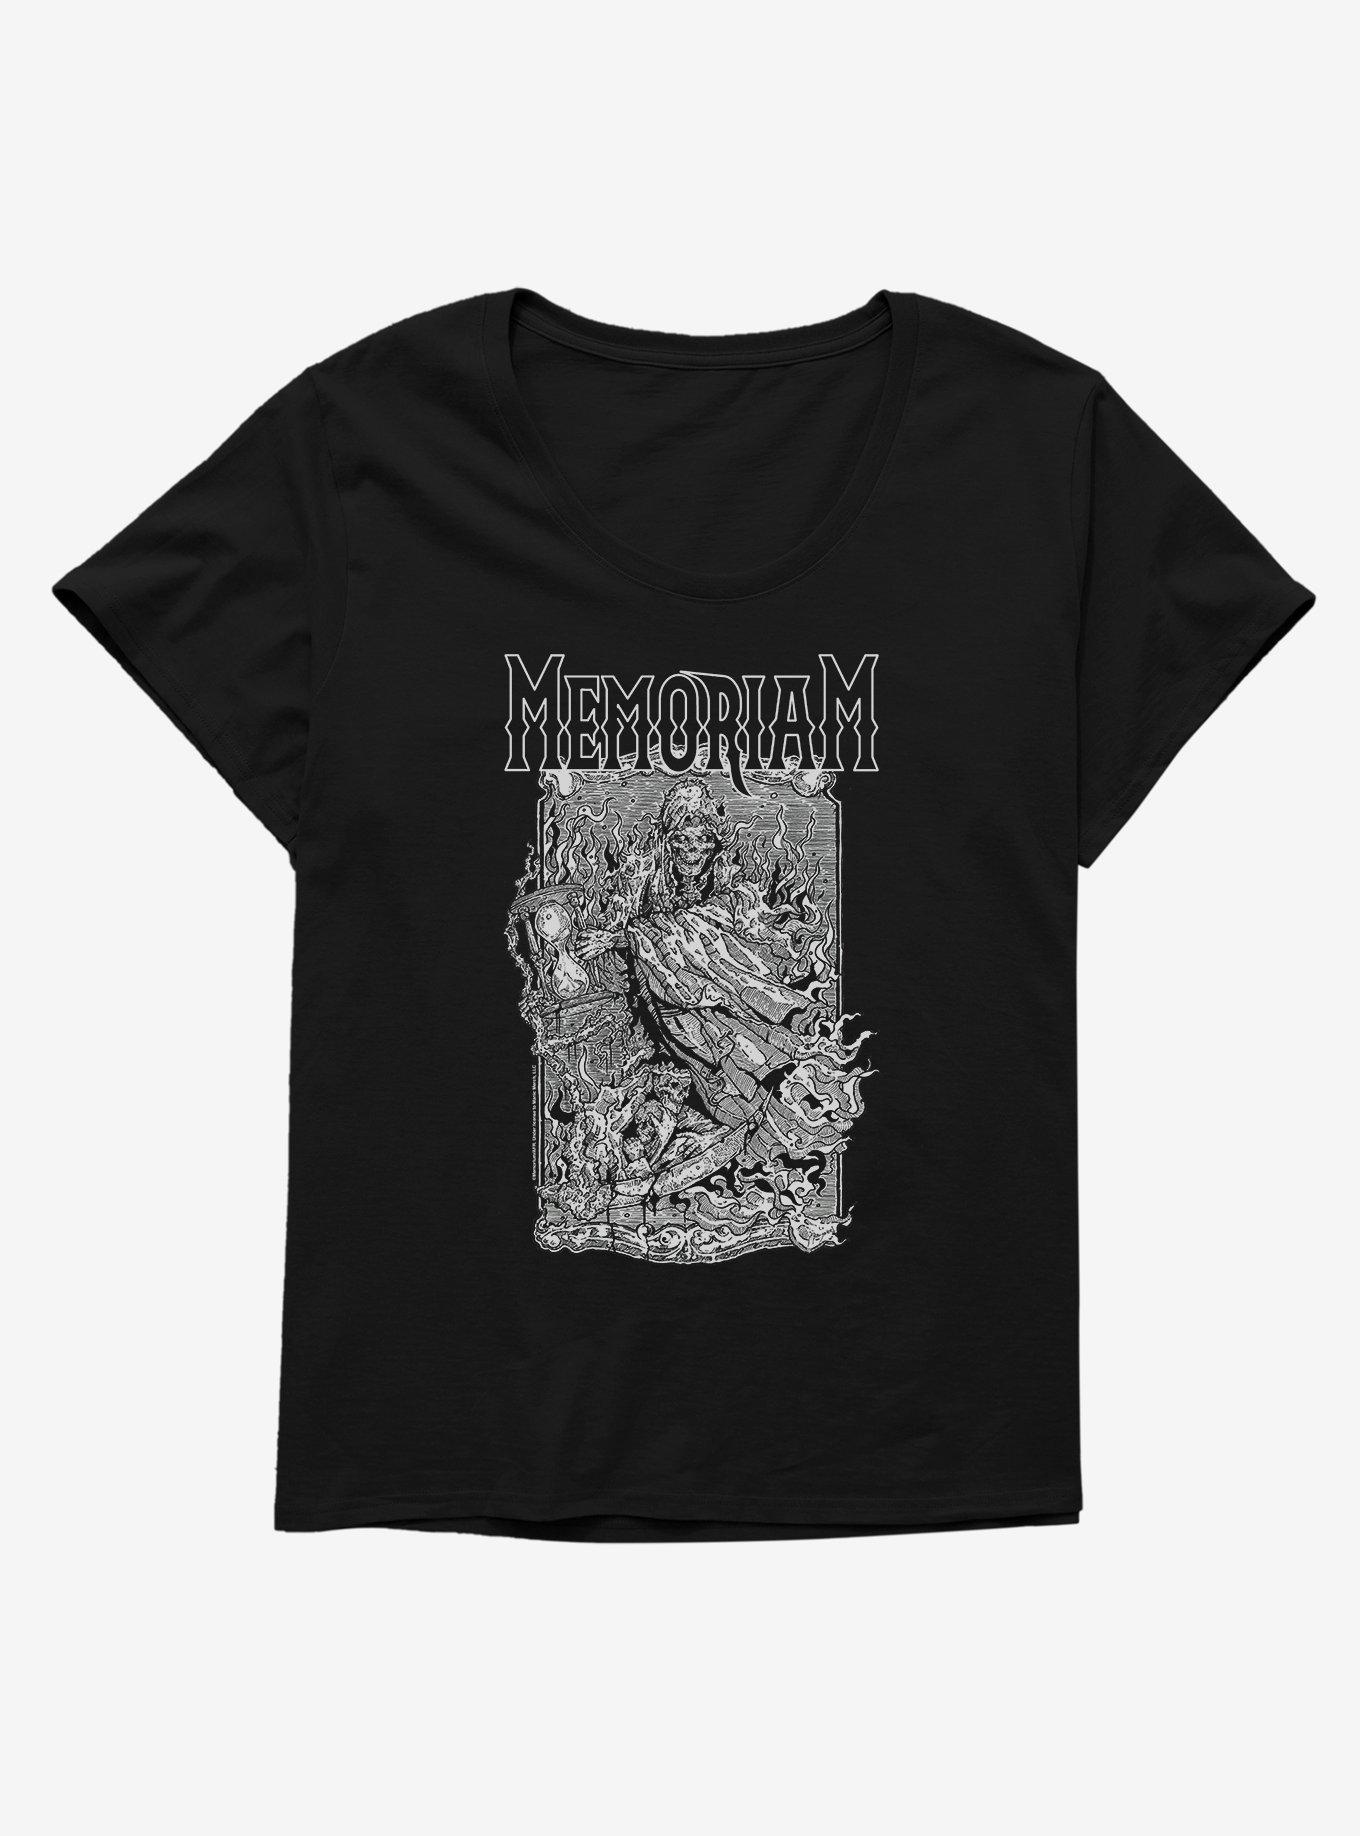 Memoriam Reaper Girls T-Shirt Plus